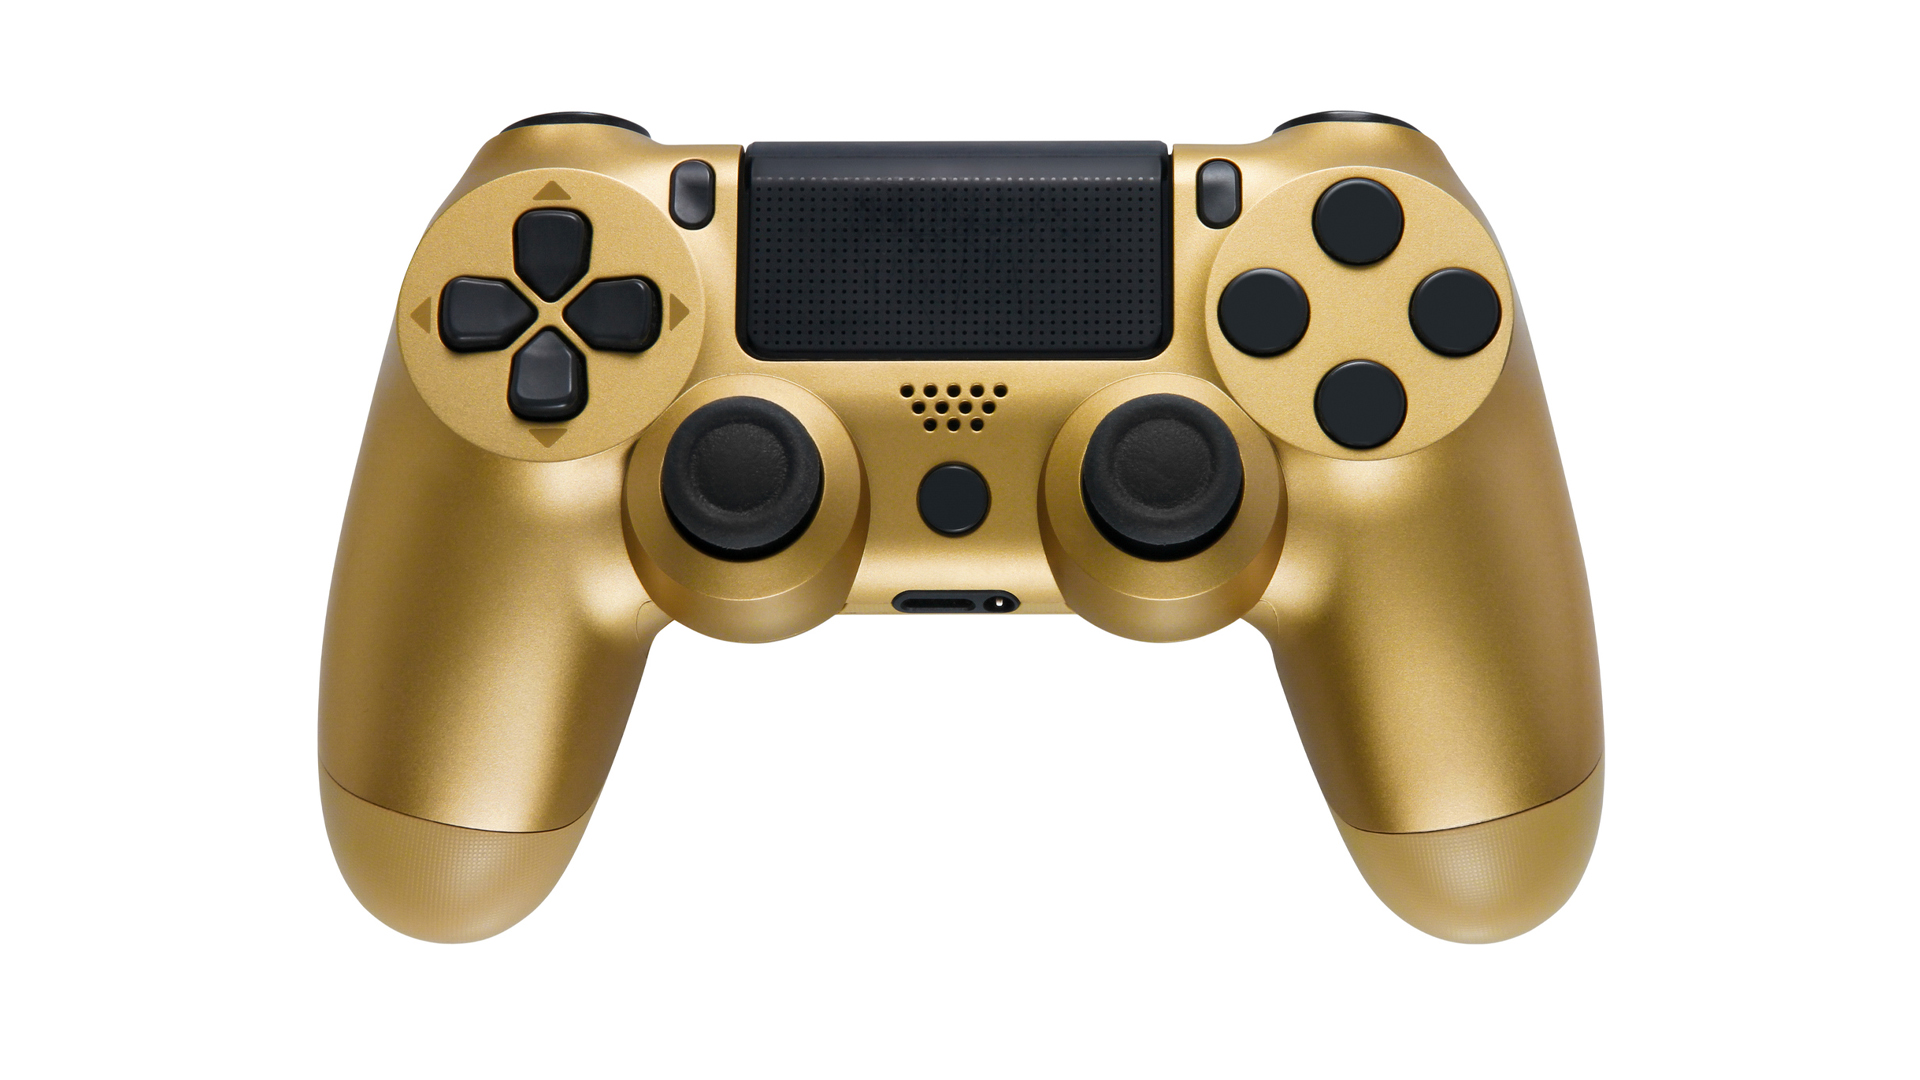 A golden game controller